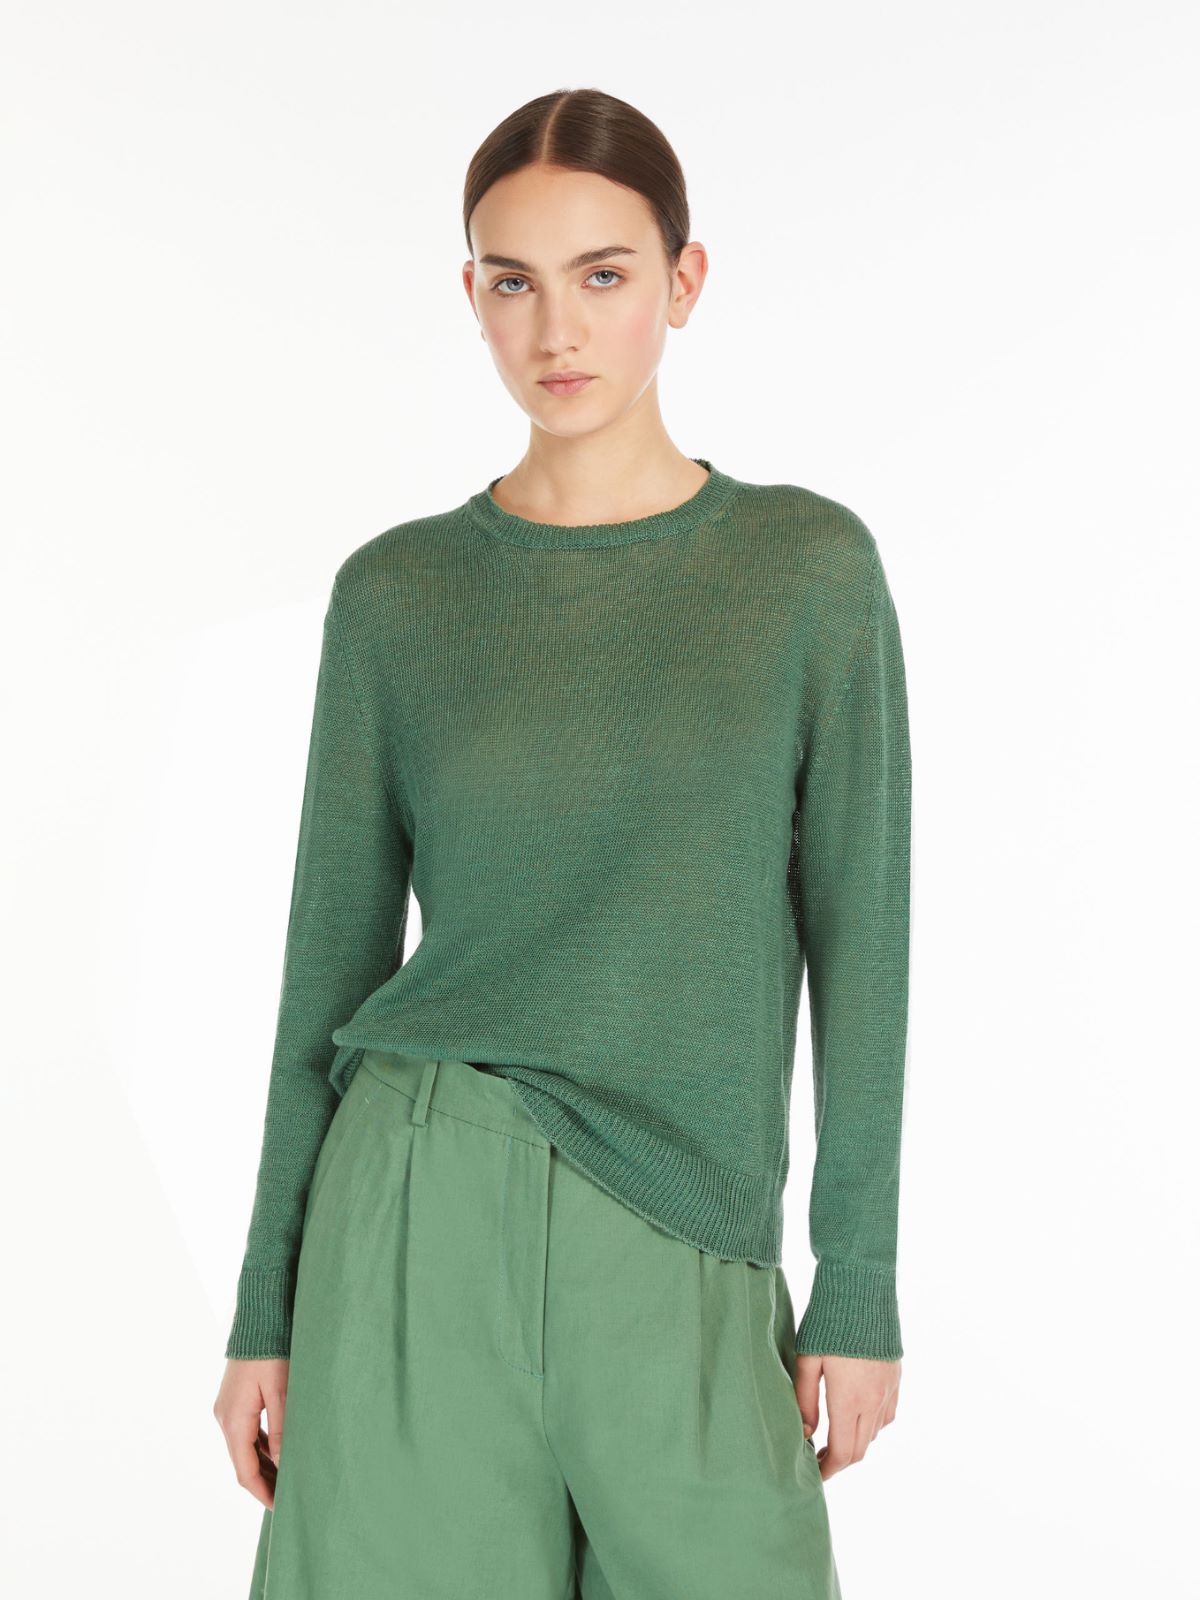 Linen yarn sweater, green | Weekend Max Mara